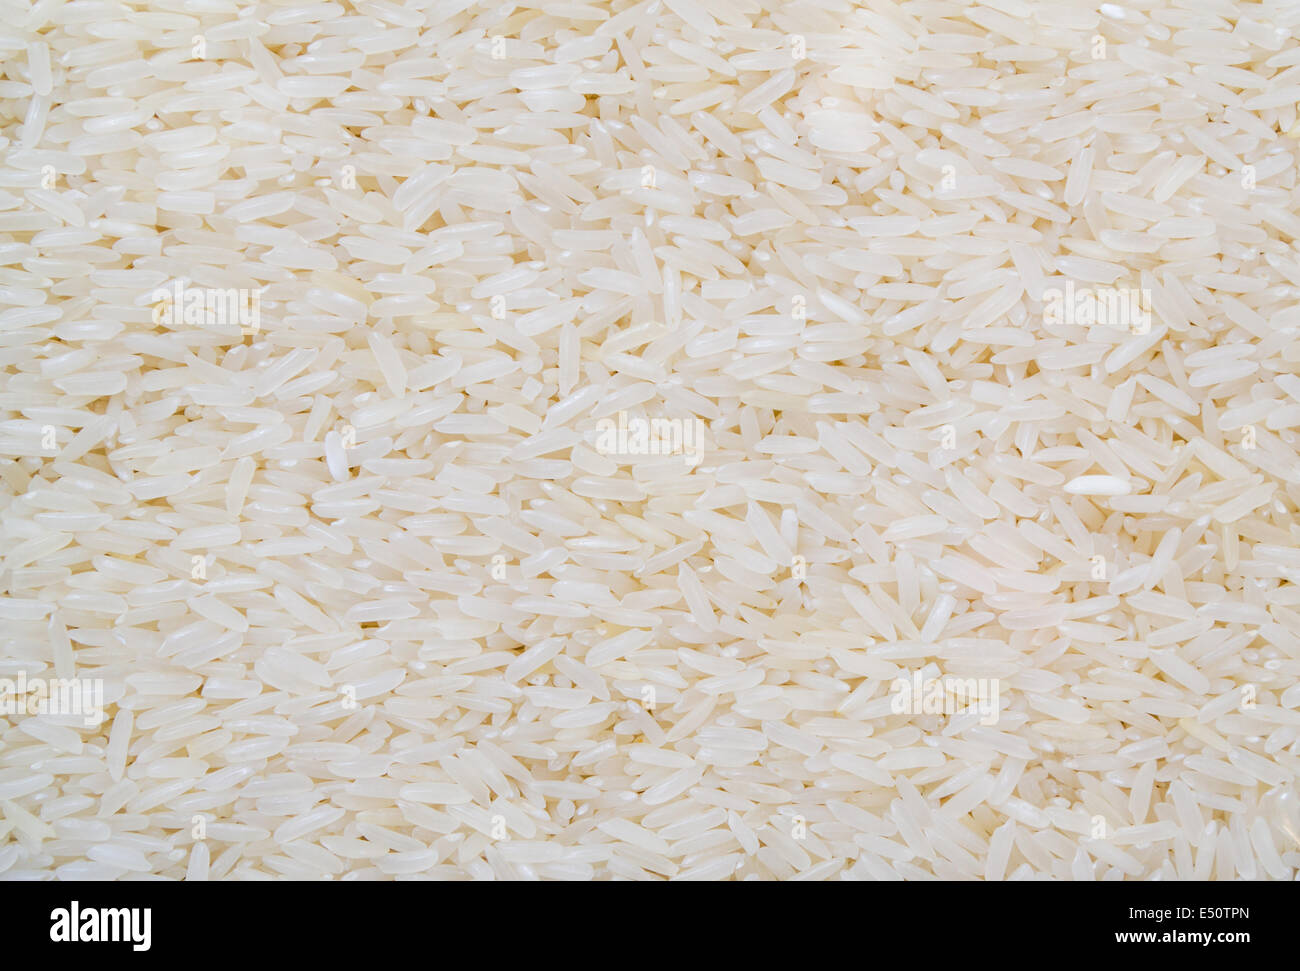 Am besten Thailand Reis Arten. Stockfoto